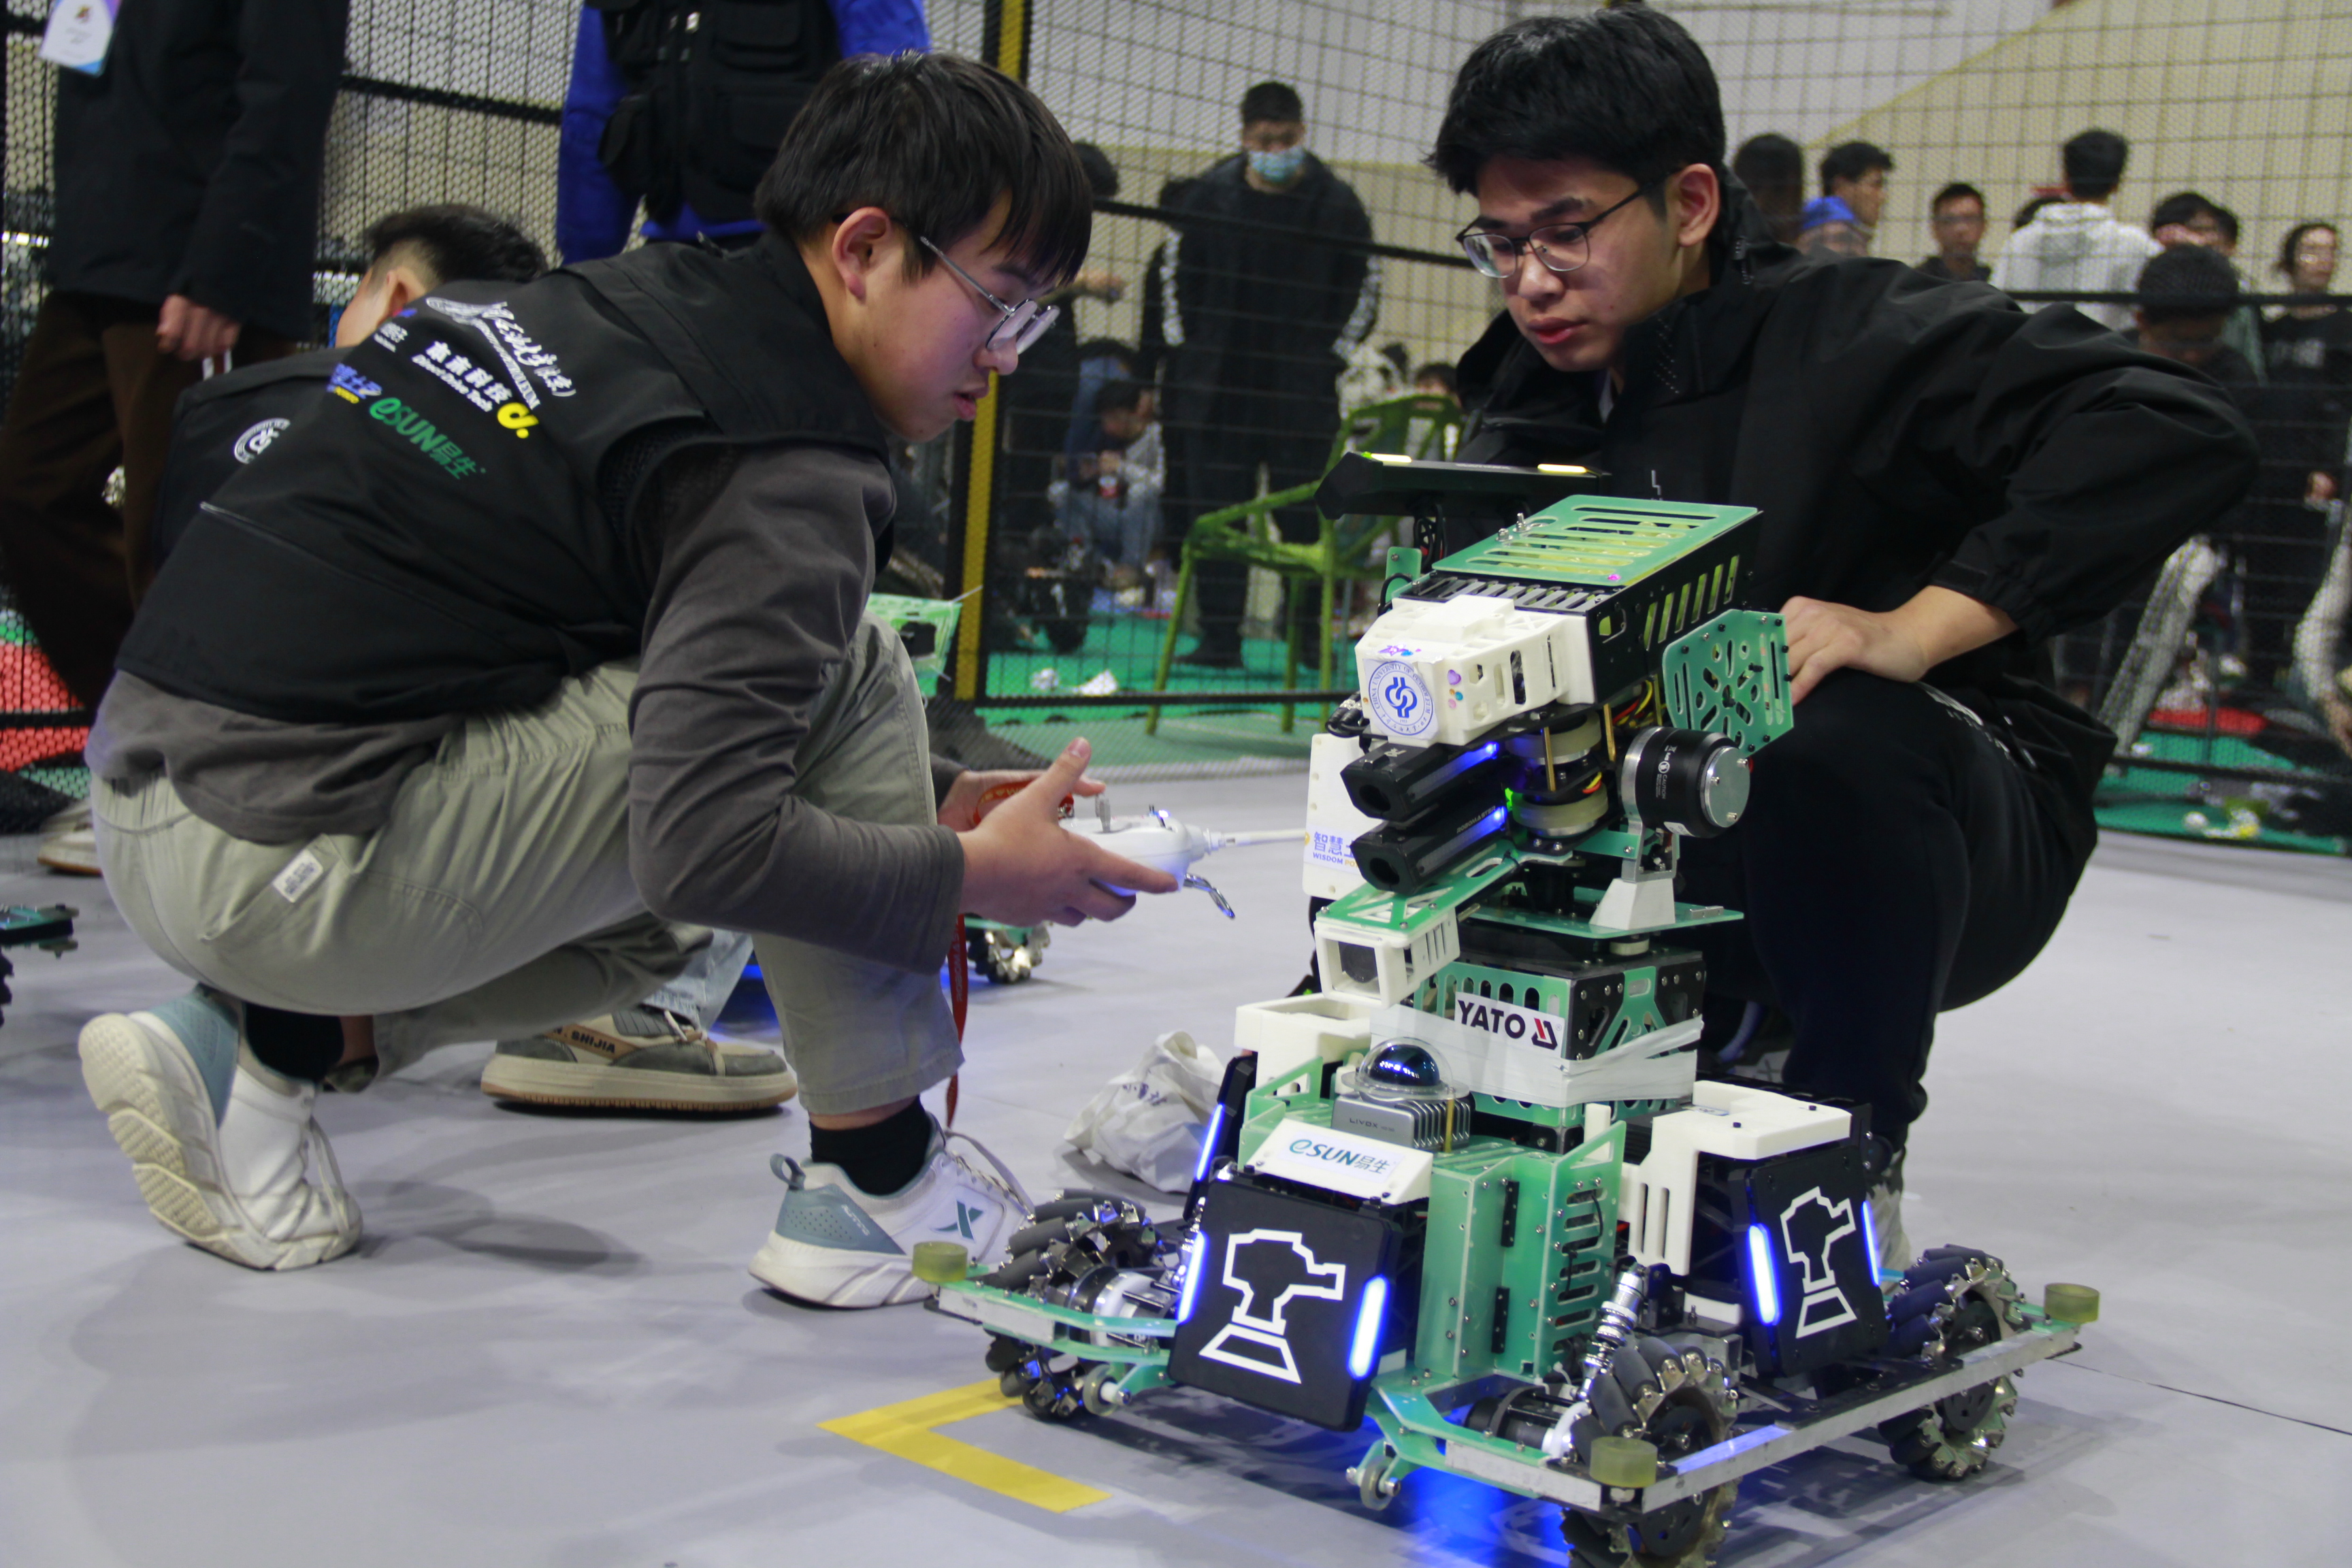 ทีมหุ่นยนต์ SPR ของมหาวิทยาลัยปิโตรเลียมแห่งประเทศจีน (ปักกิ่ง)